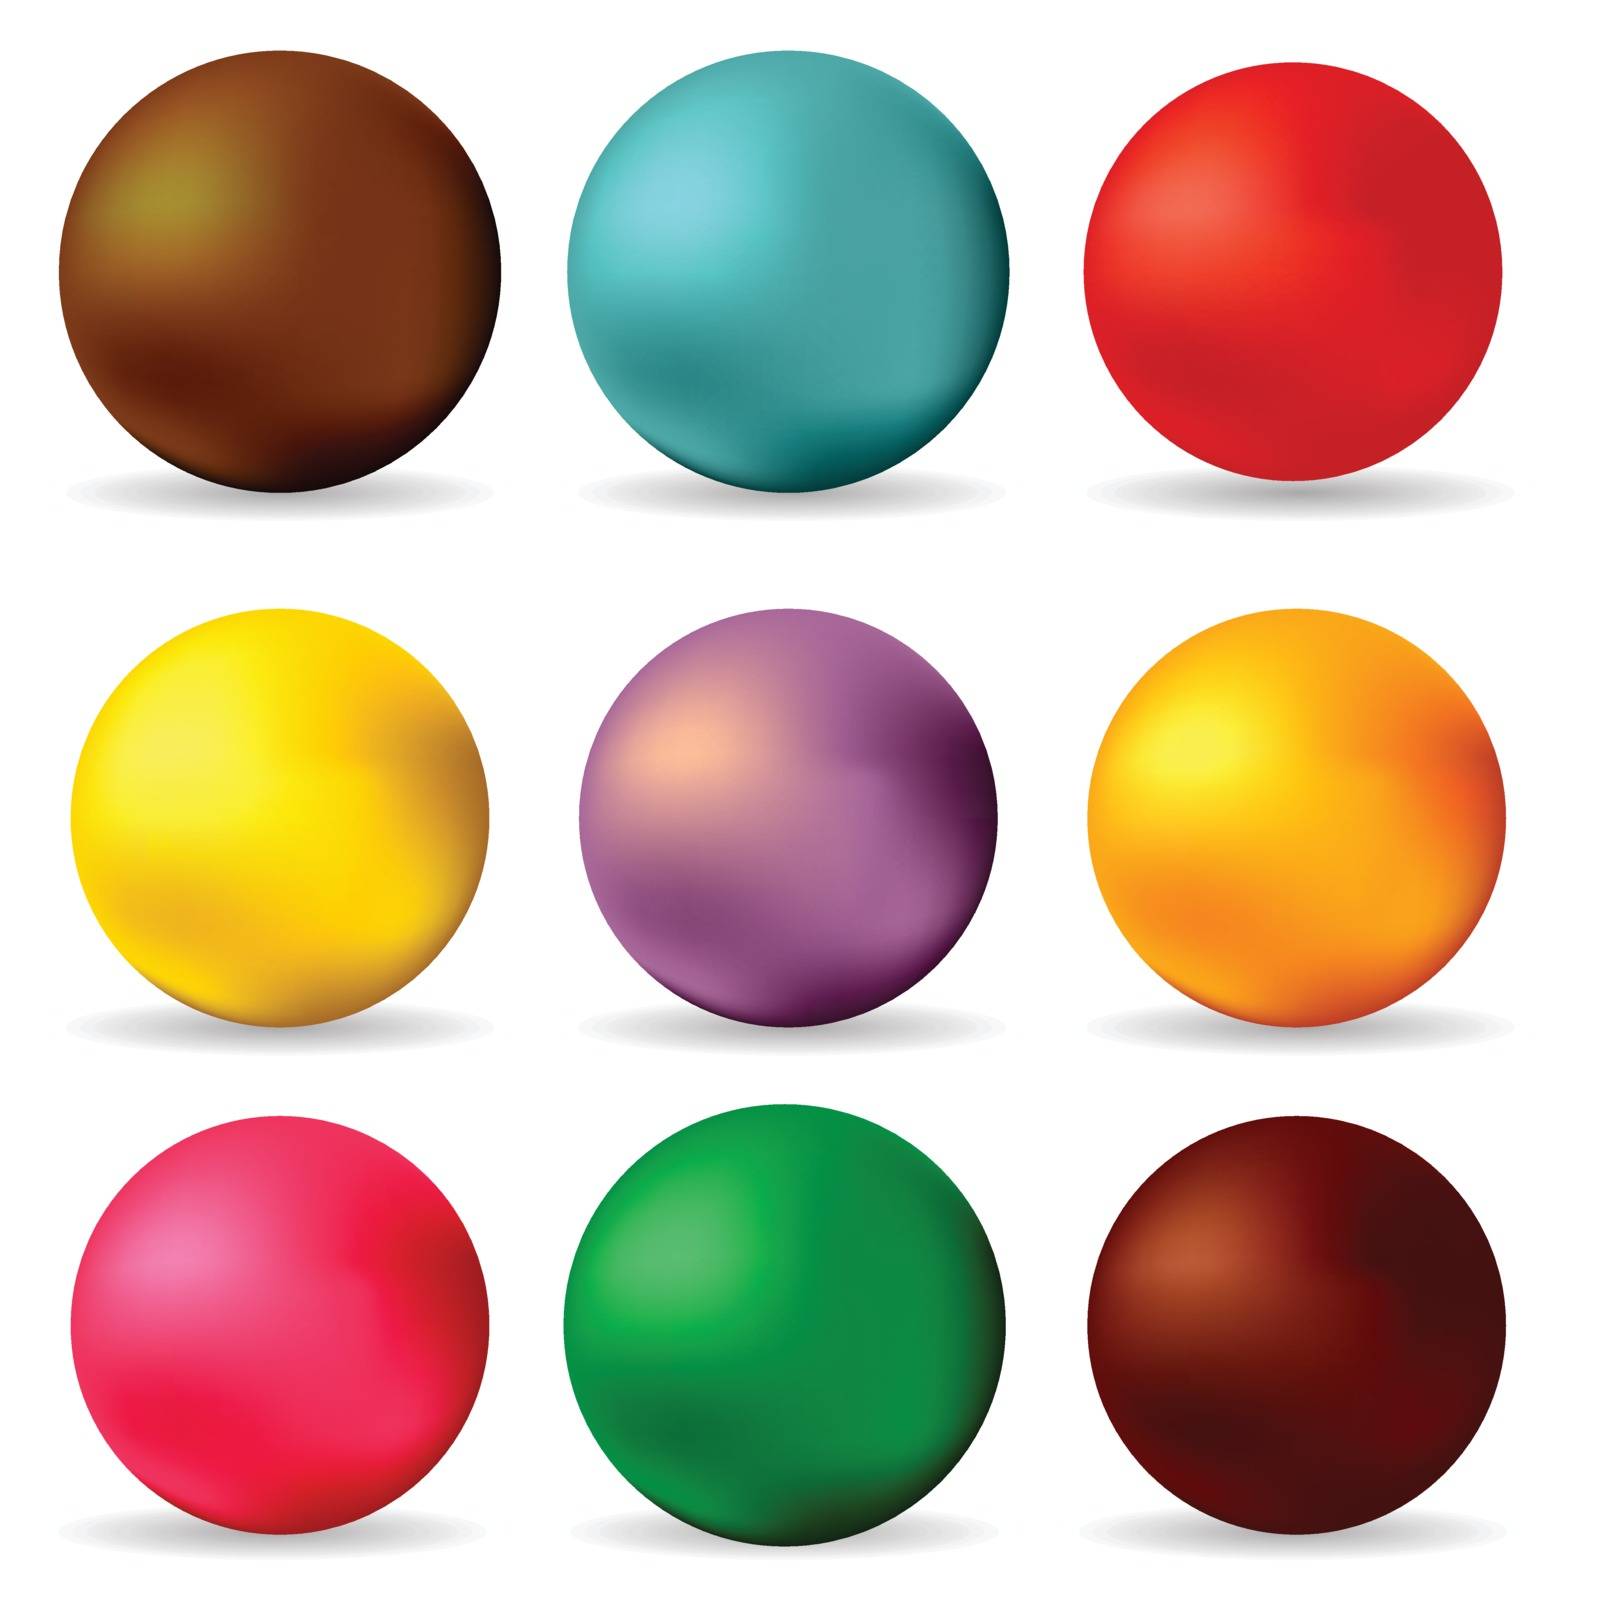 spheres by valeo5